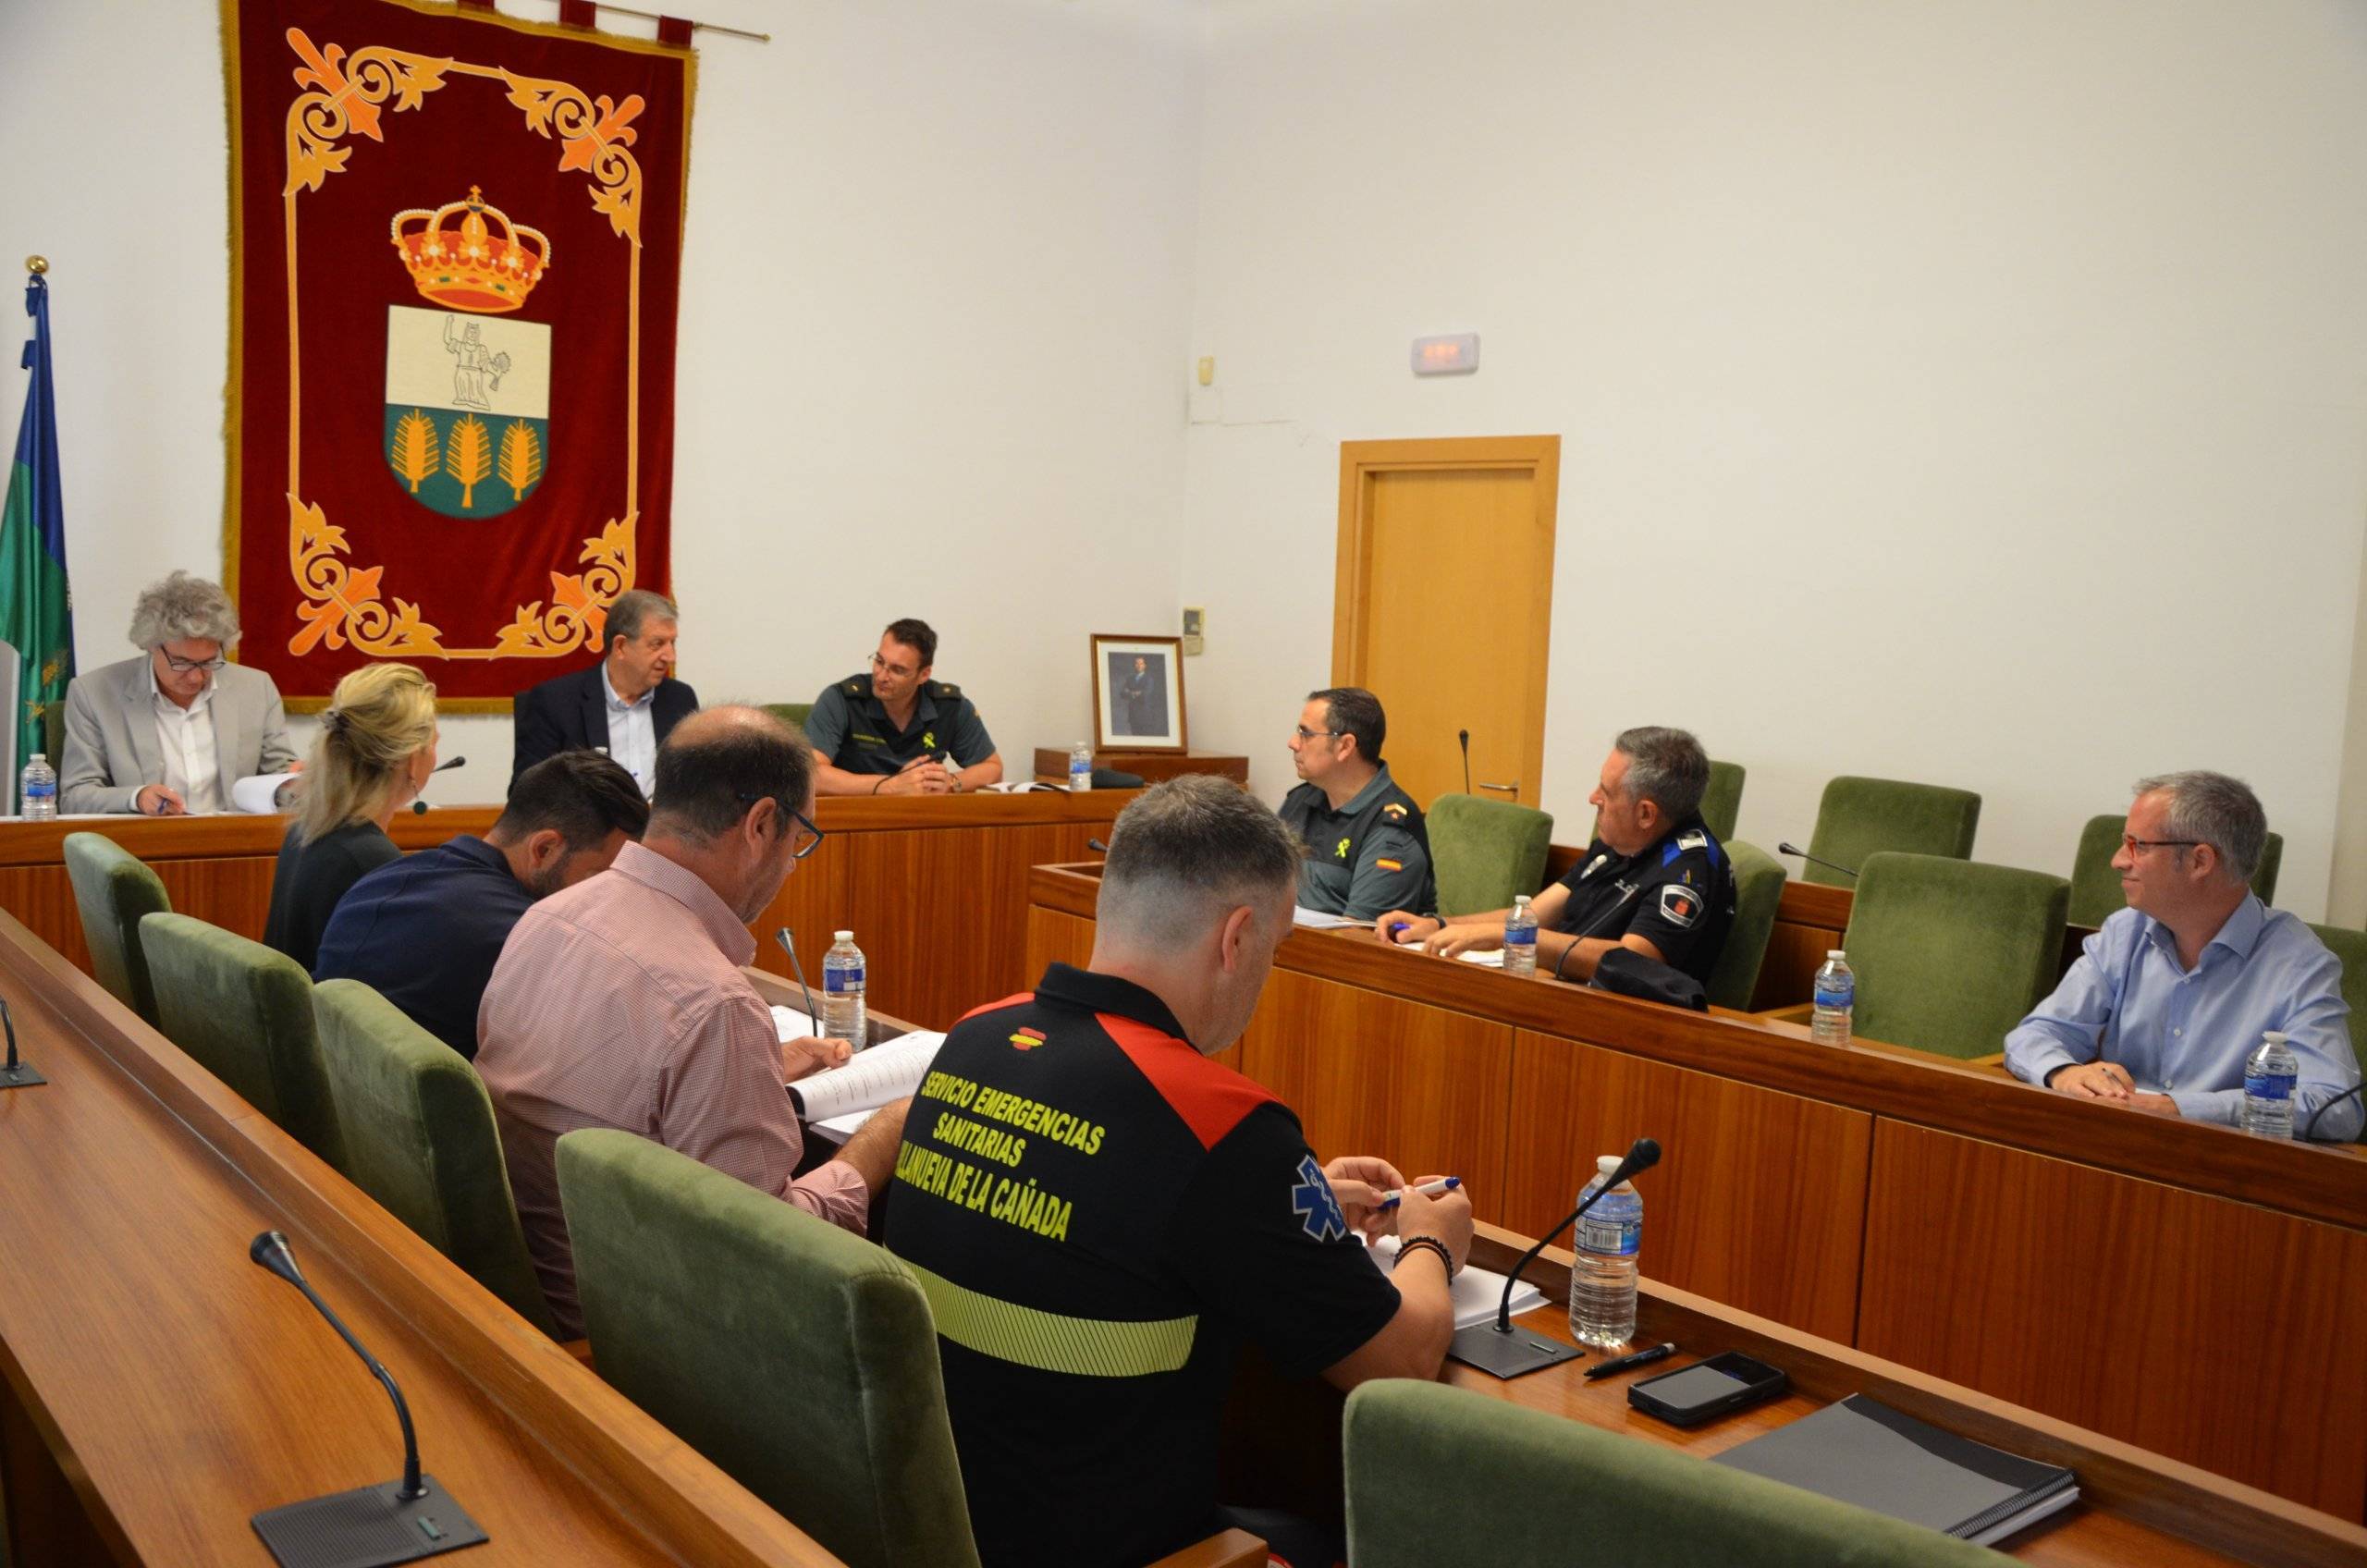 Reunión de la Junta Local de Seguridad celebrada en el Salón de Plenos.